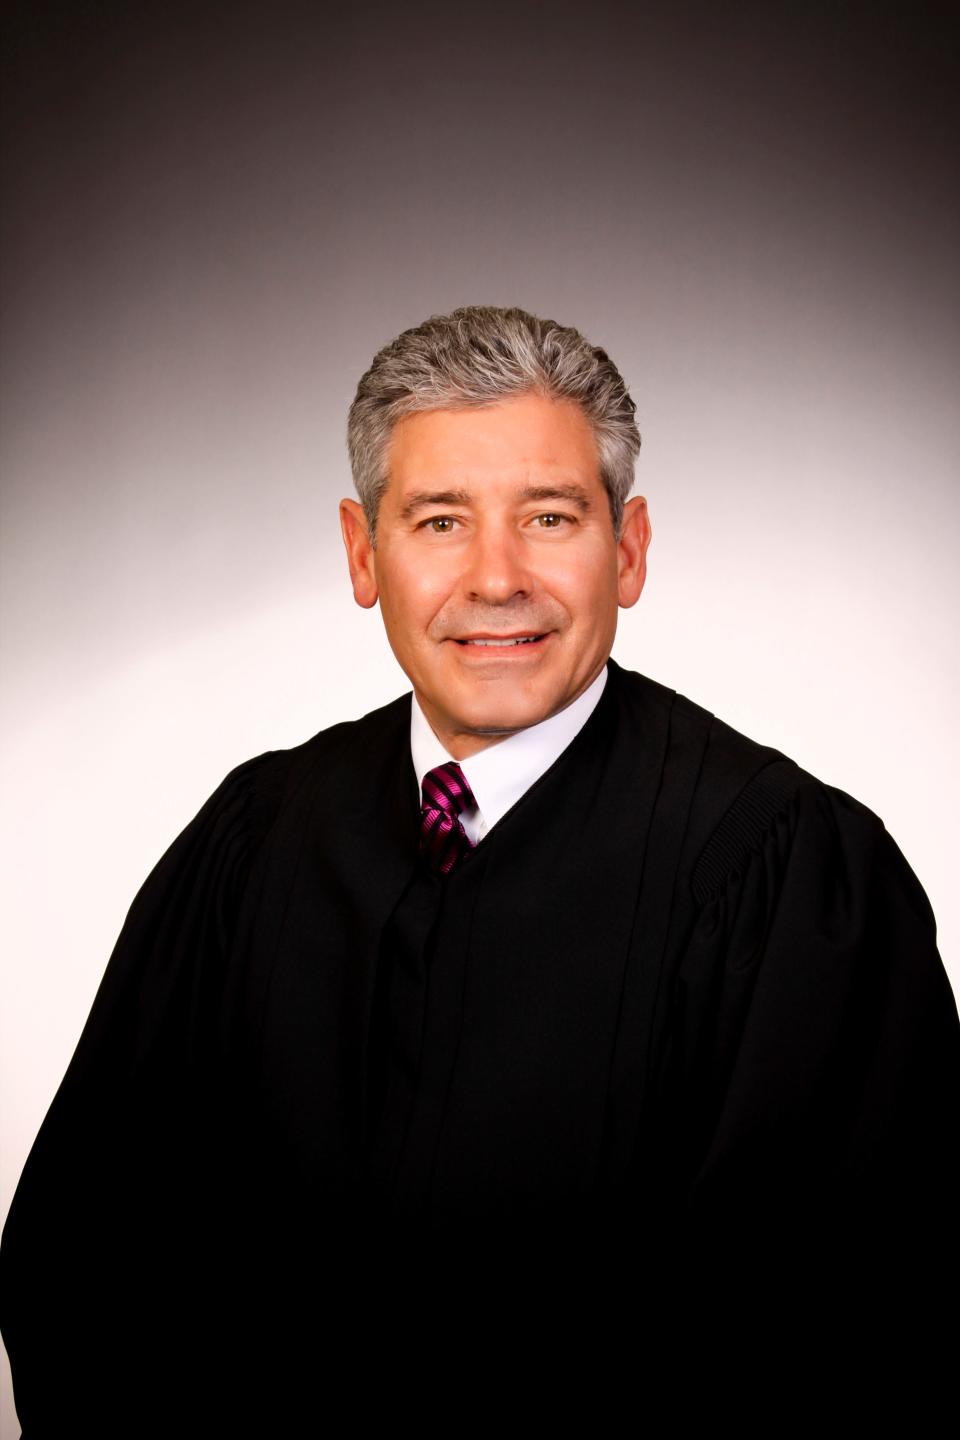 Judge Mark S. Braunlich